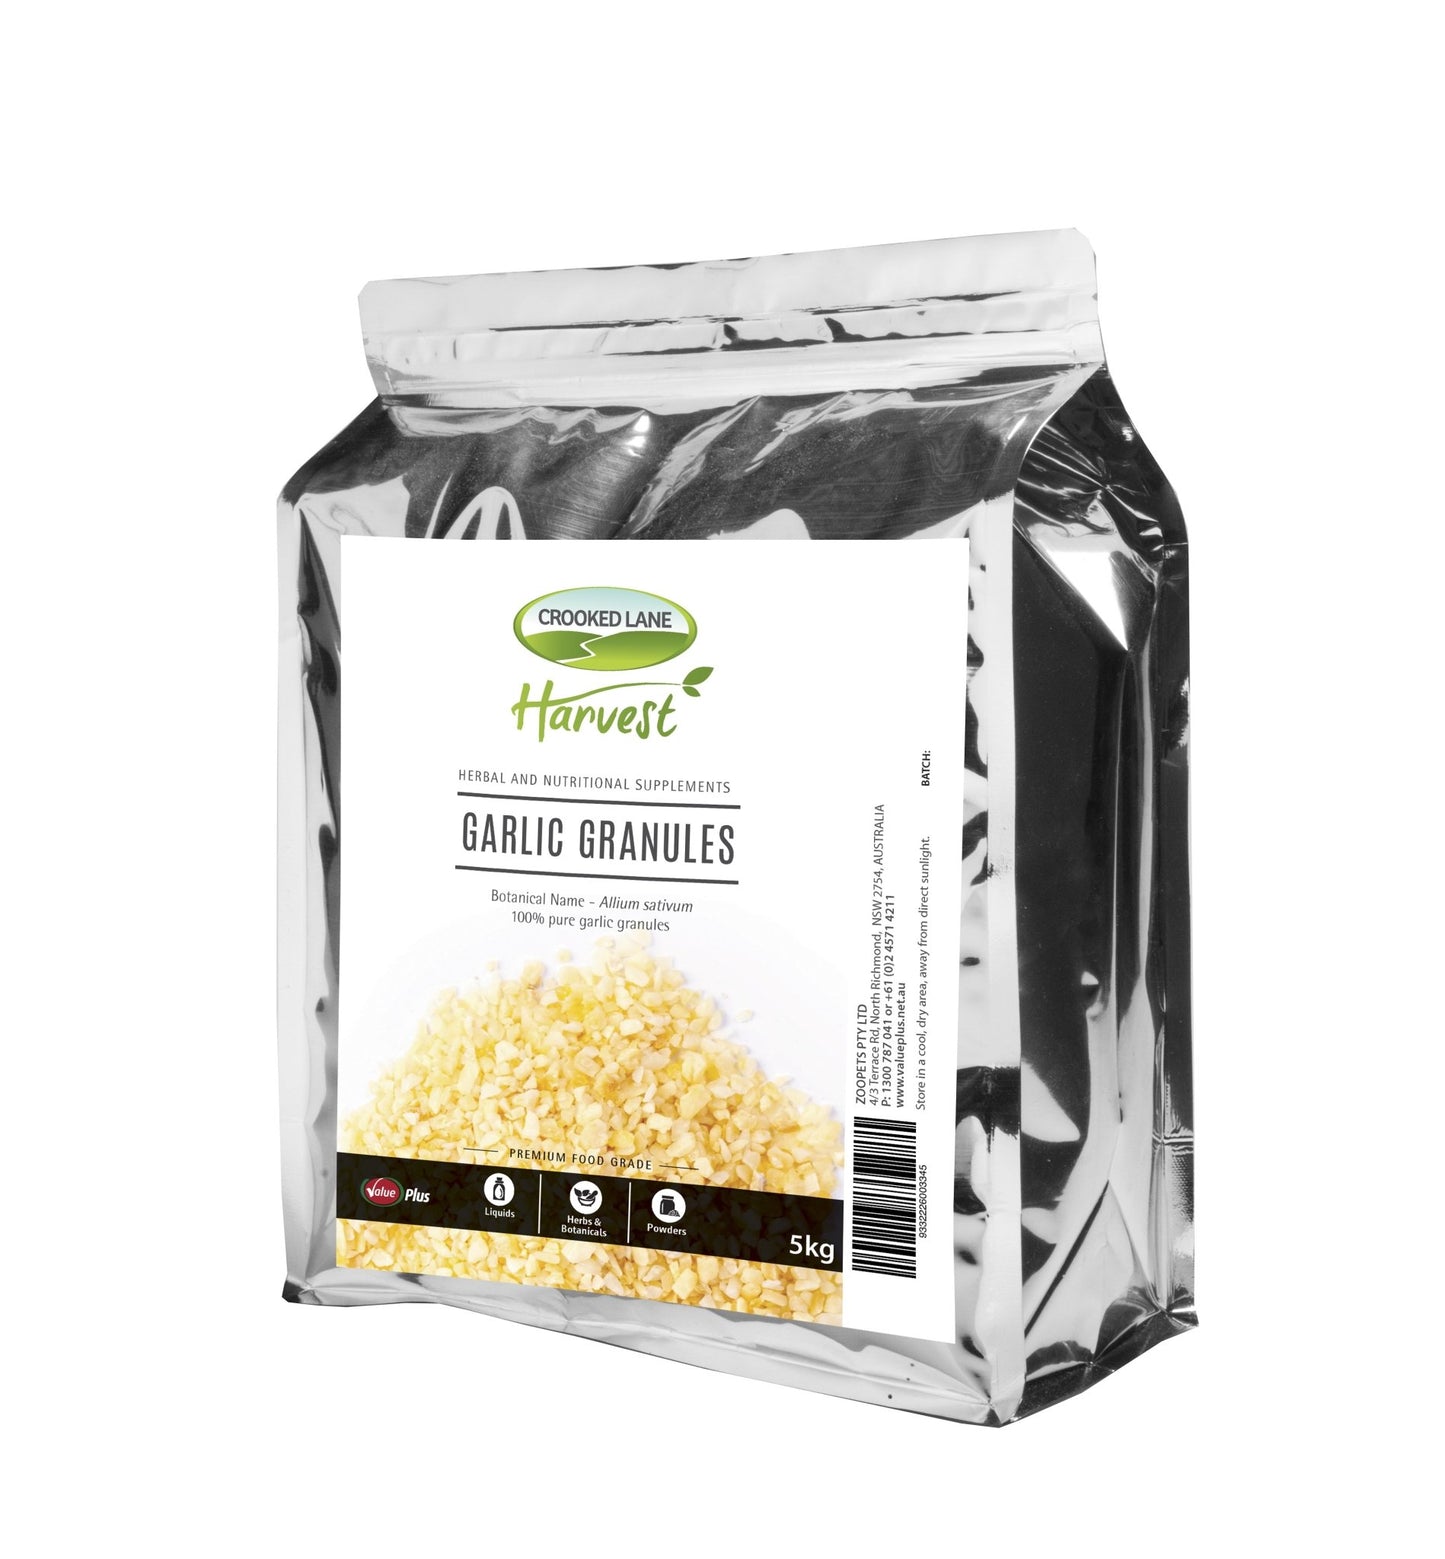 Crooked Lane Harvest Garlic Granules - Woonona Petfood & Produce